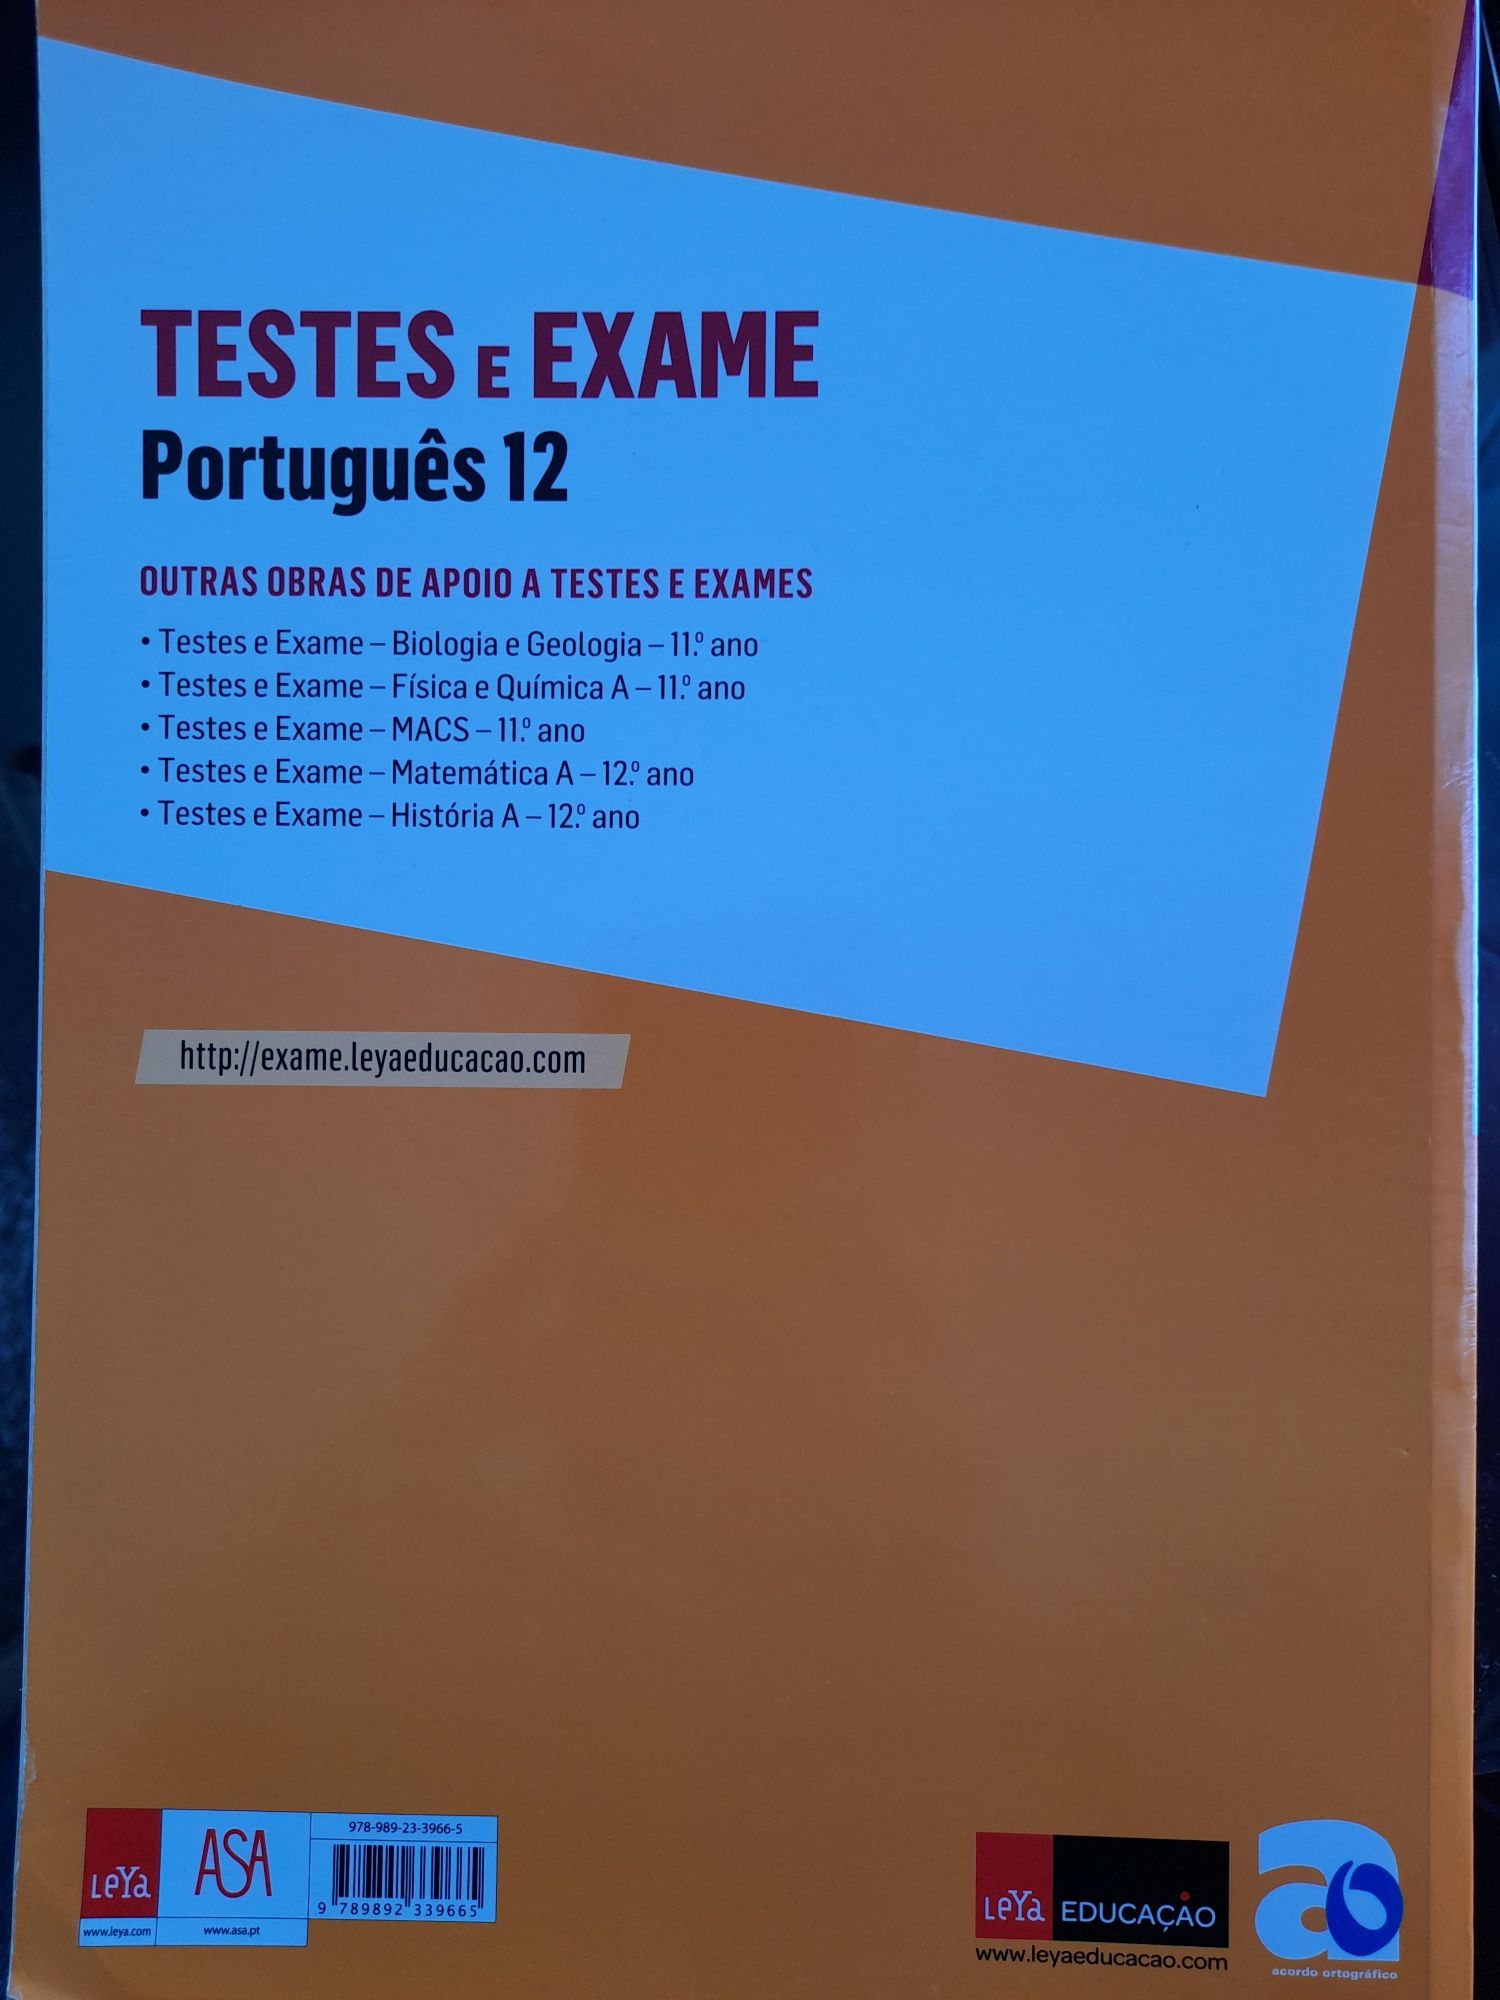 Livros para preparacao para exames de portugues